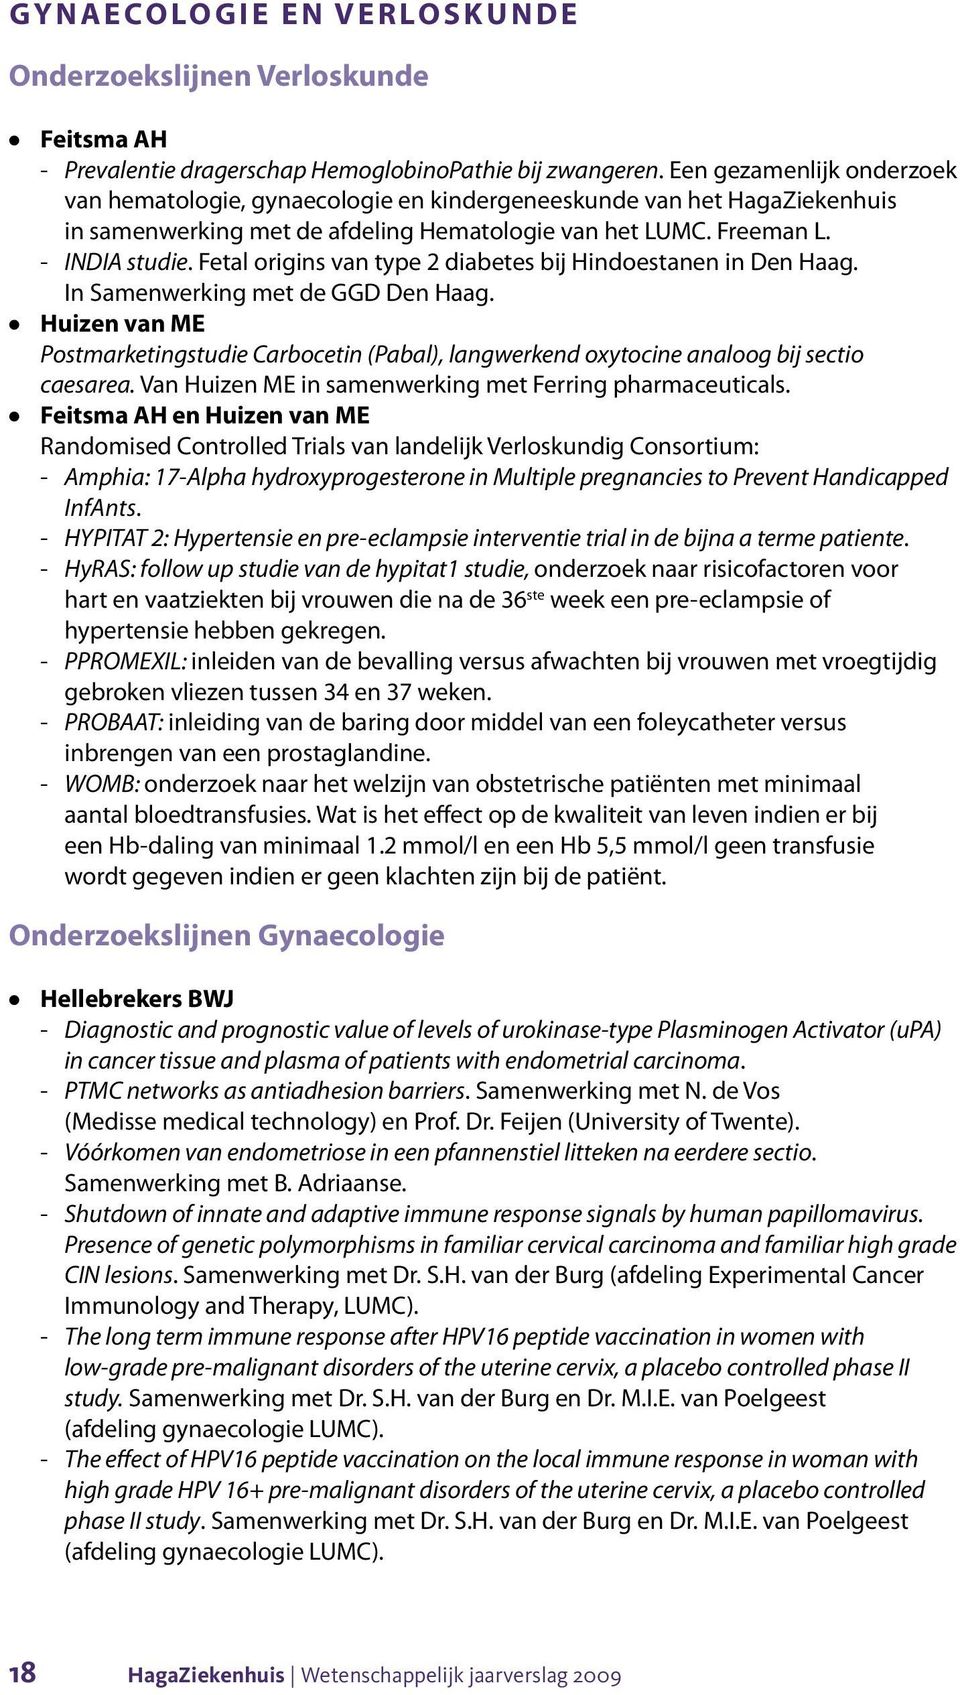 Fetal origins van type 2 diabetes bij Hindoestanen in Den Haag. In Samenwerking met de GGD Den Haag.